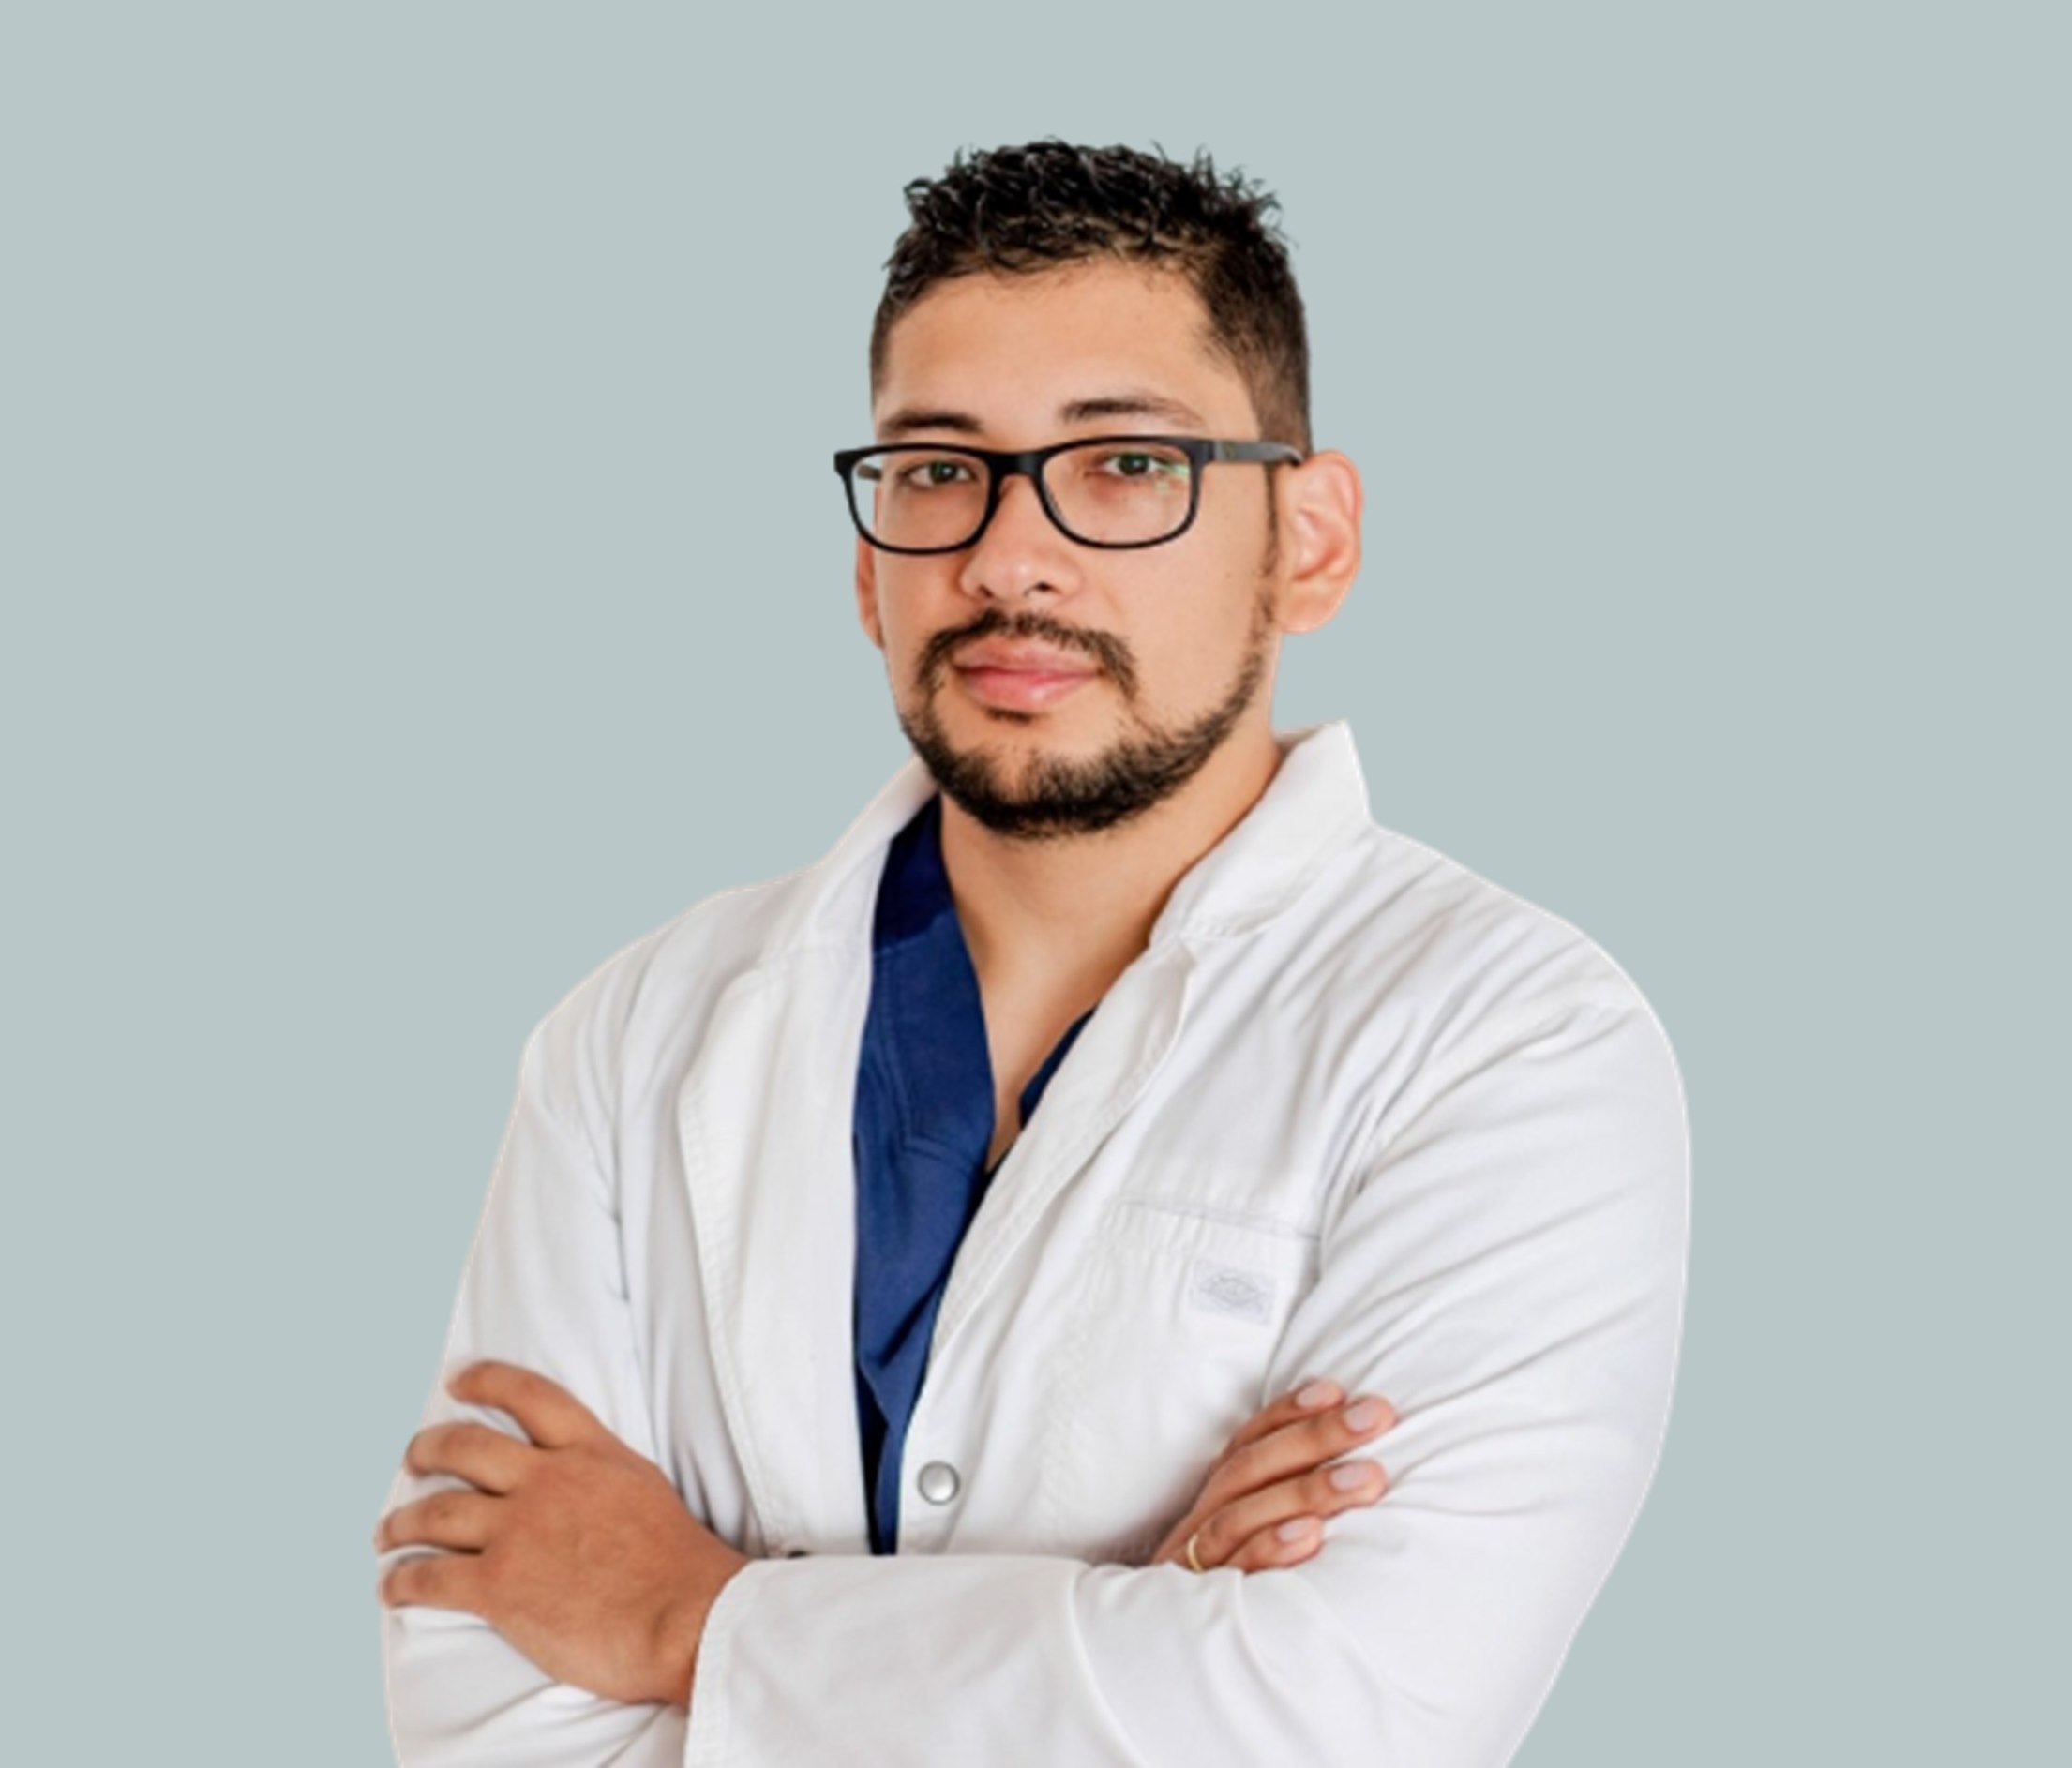 Dr. Edgard Fabricio Paredes oftalmologos oftalmologia Oftalmologo Oftalmólogo